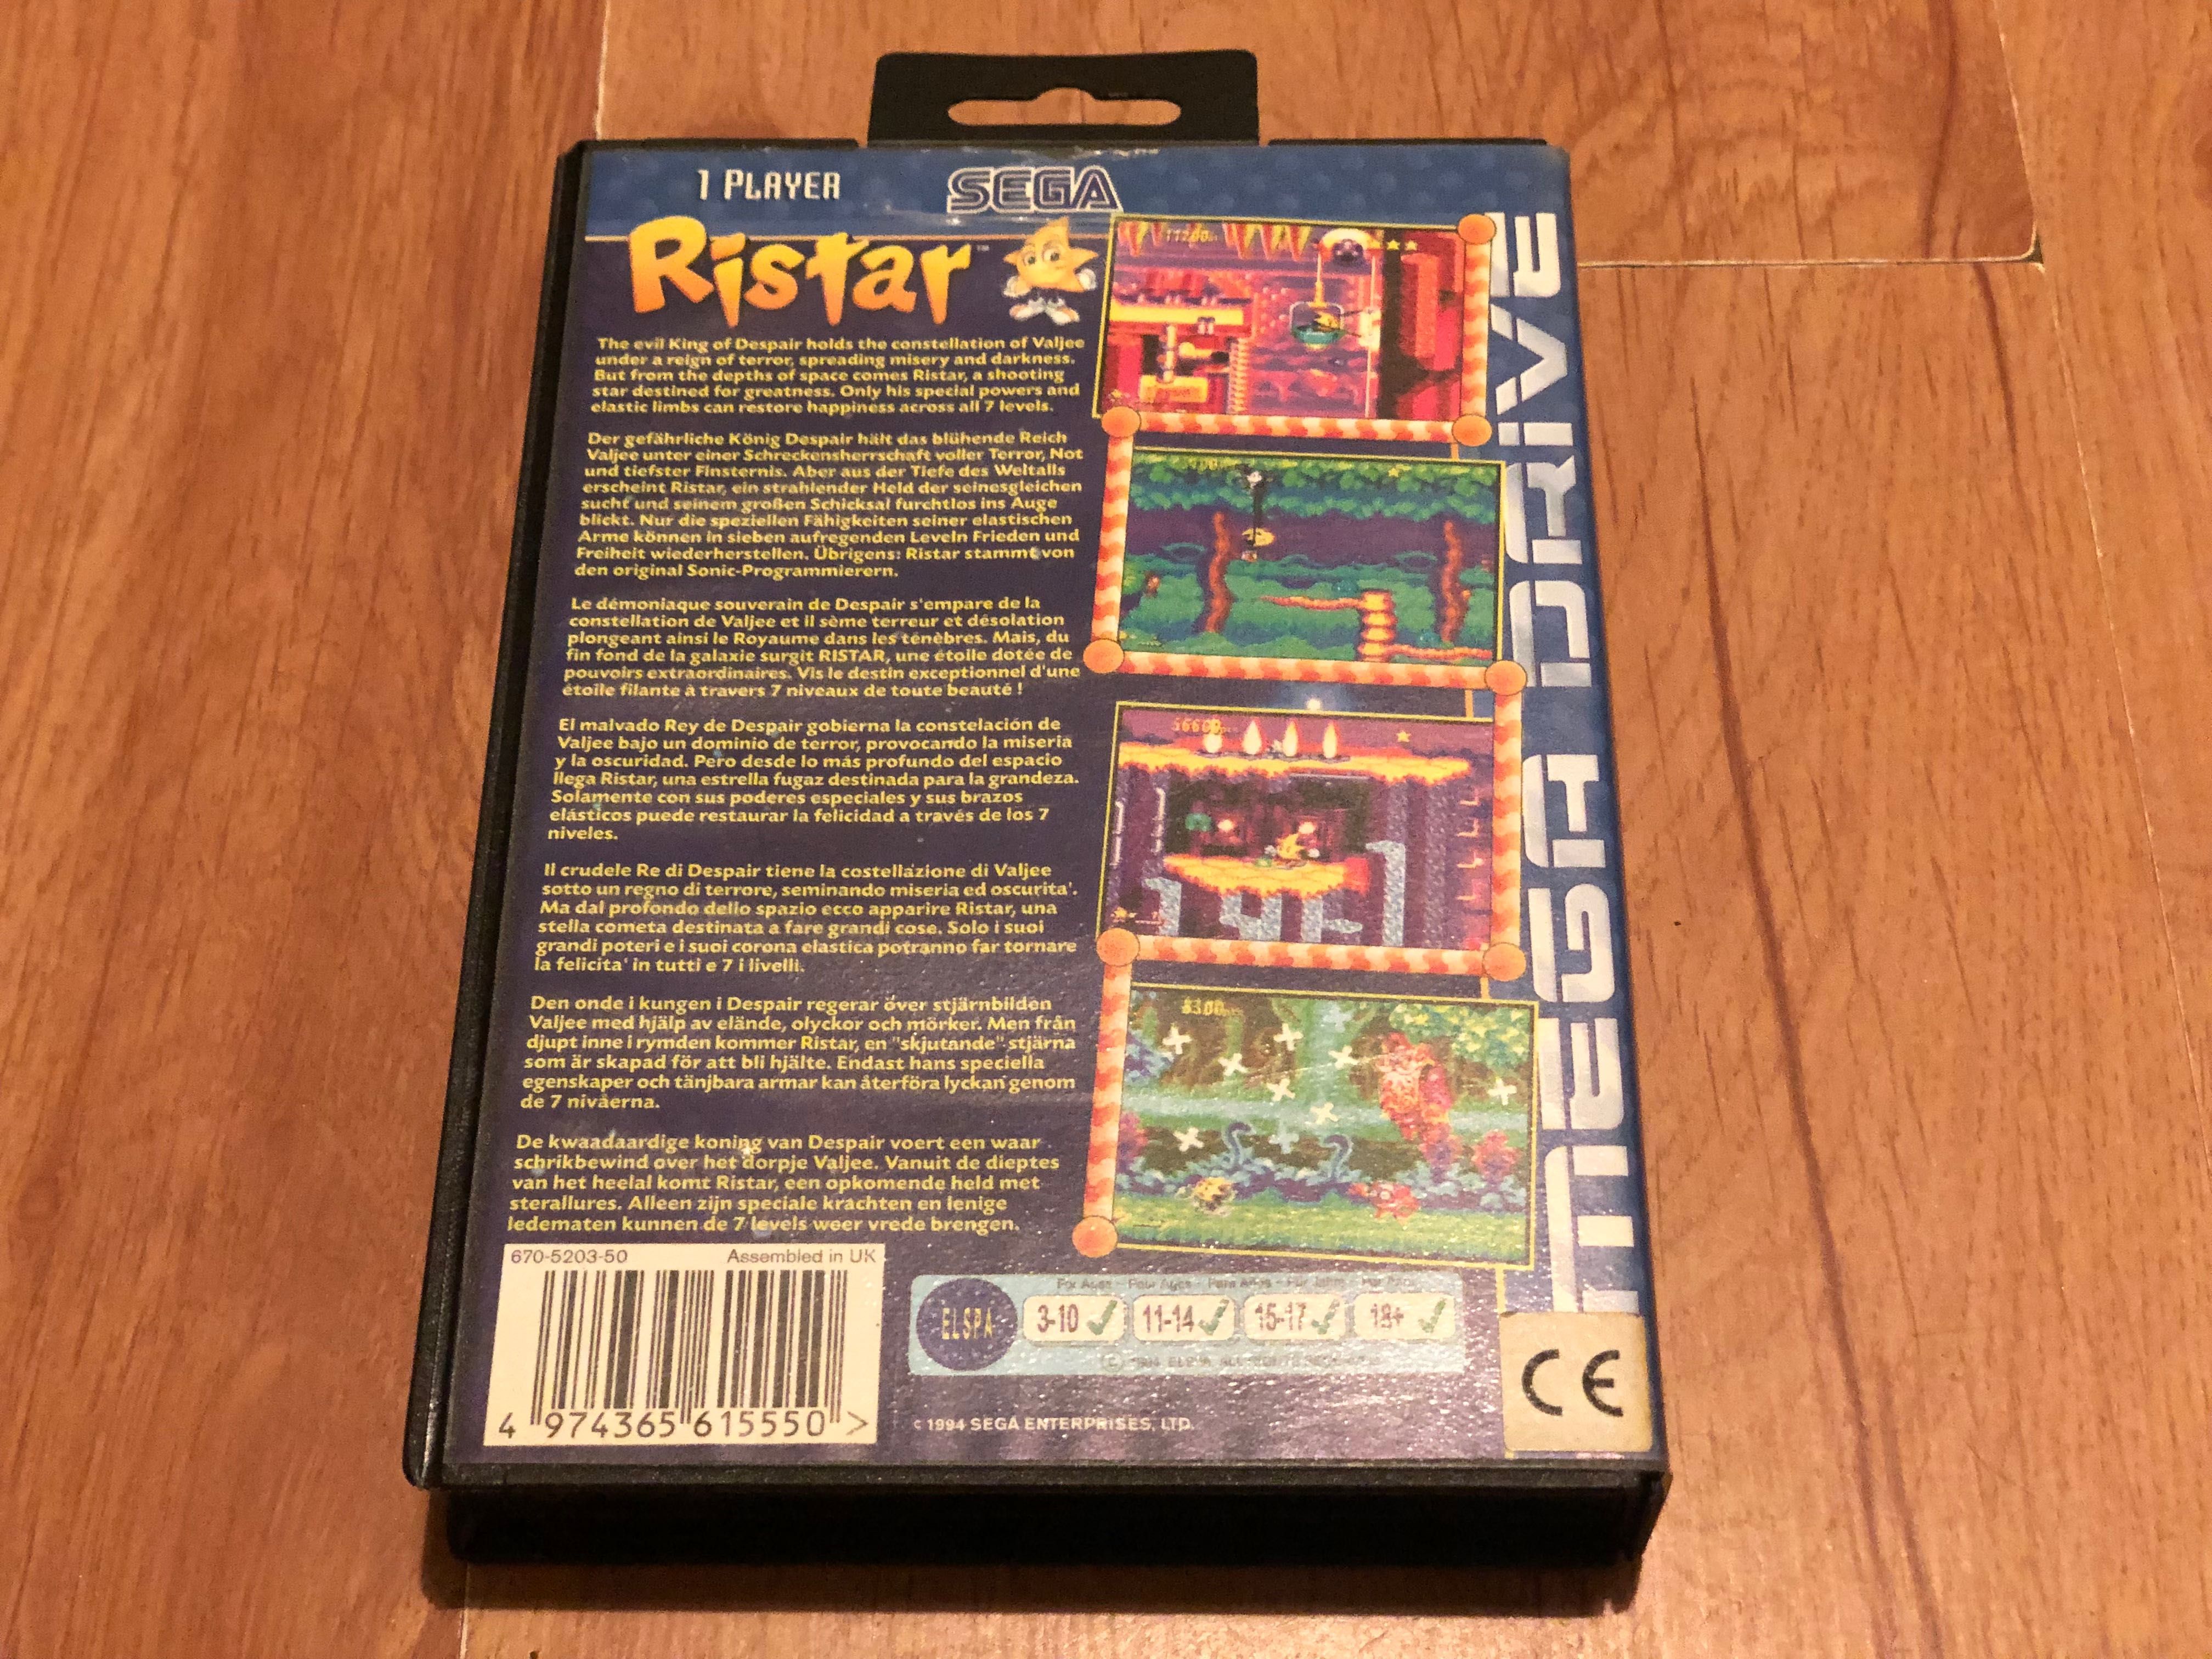 Ristar, Unikat, Sega Mega Drive